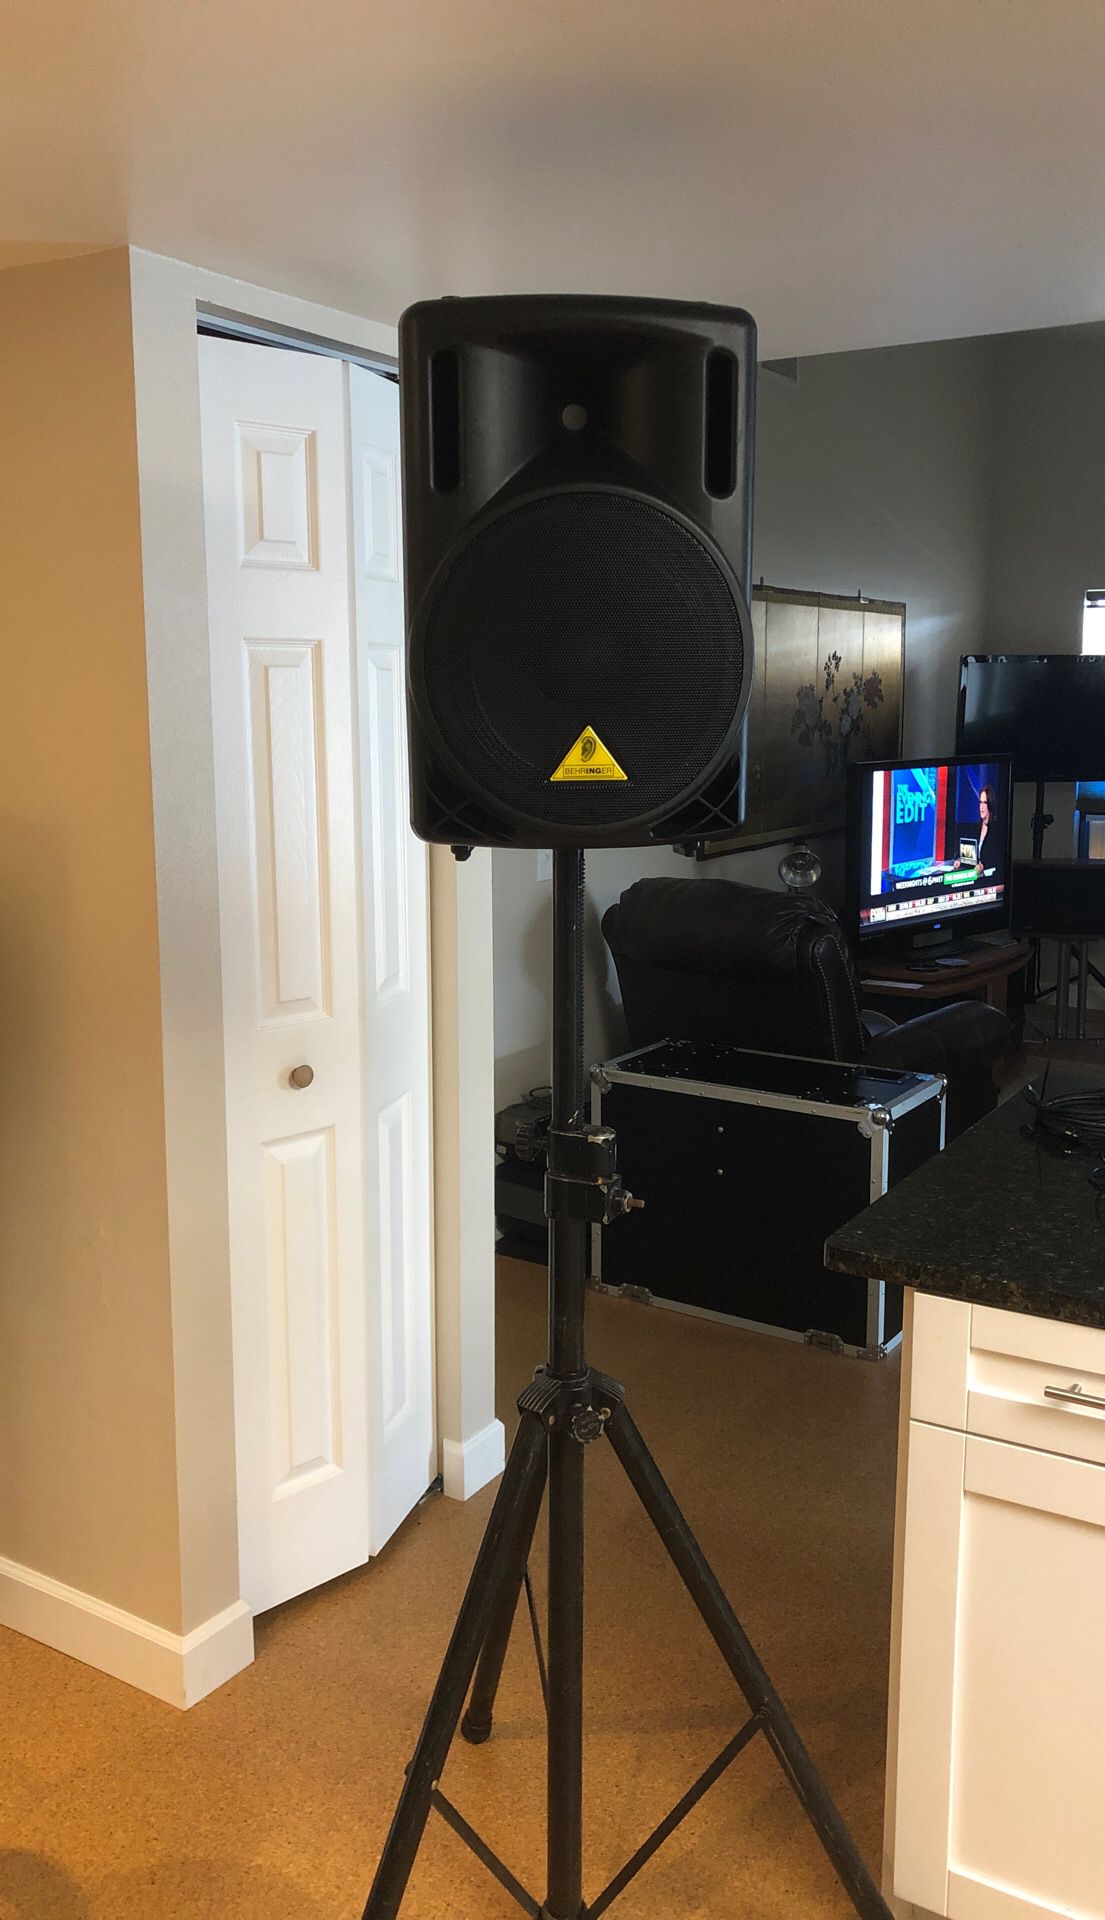 Behringer 12 inch active PA speaker $100